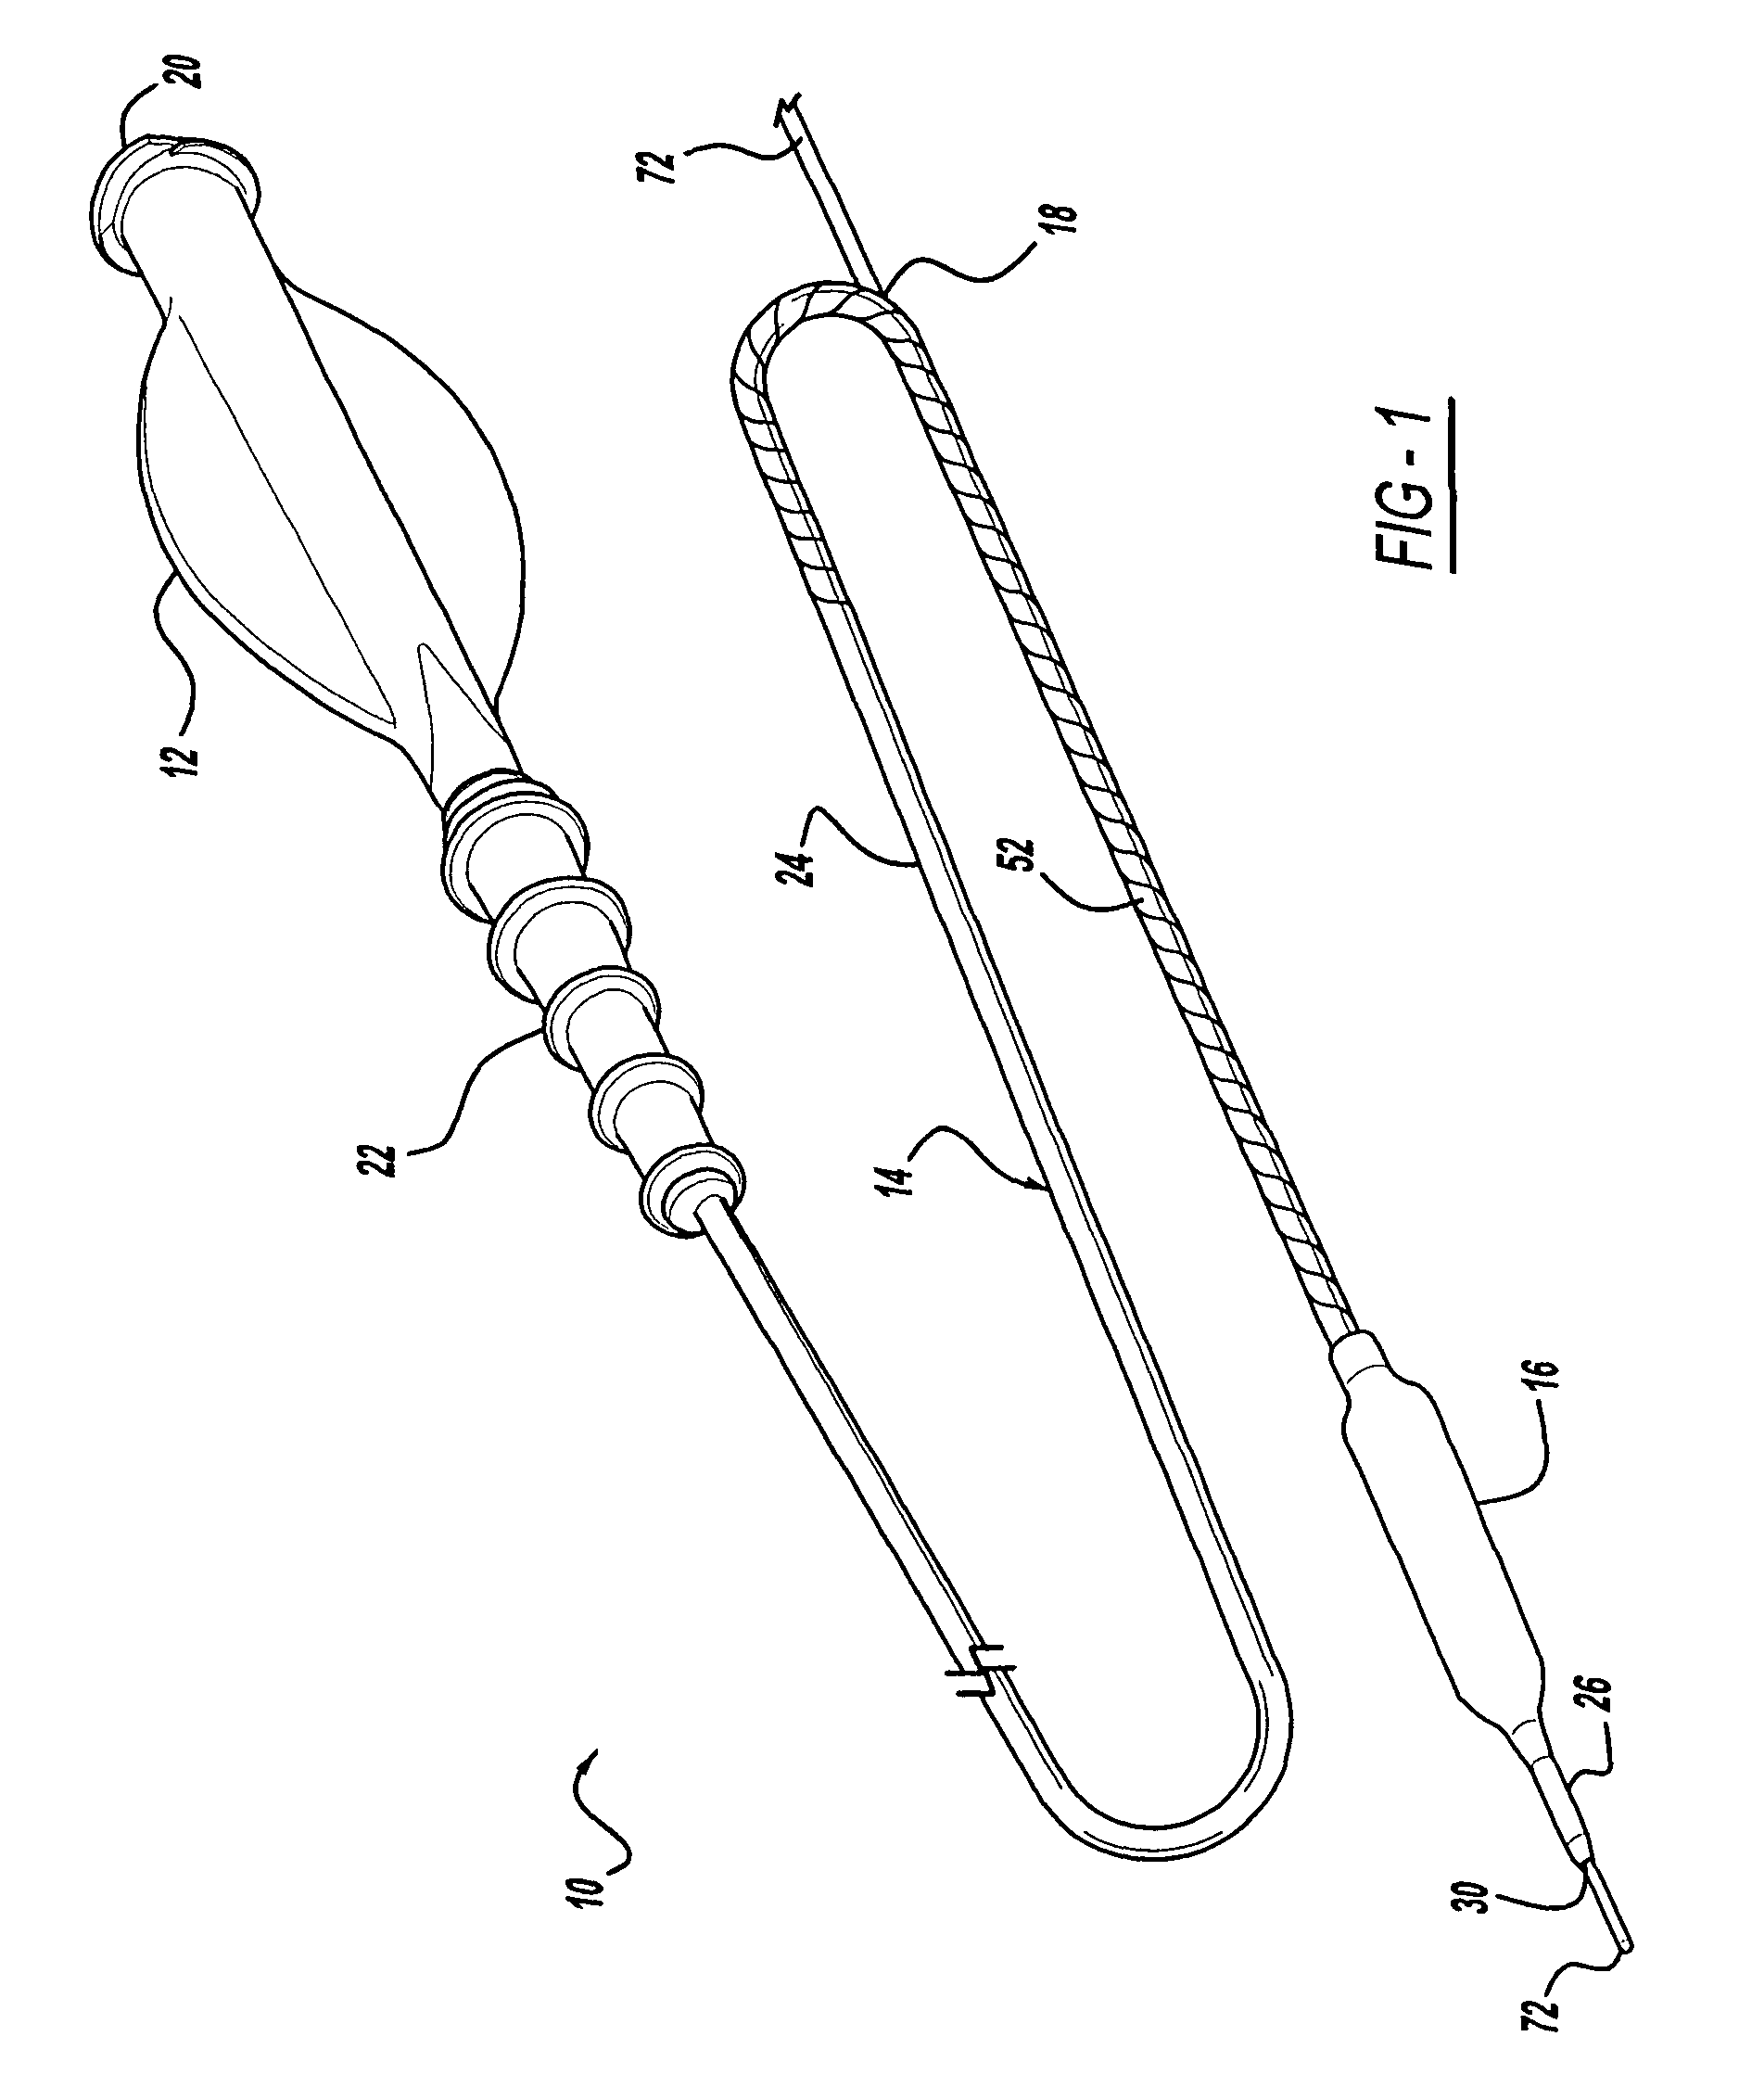 Rapid-exchange balloon catheter shaft and method